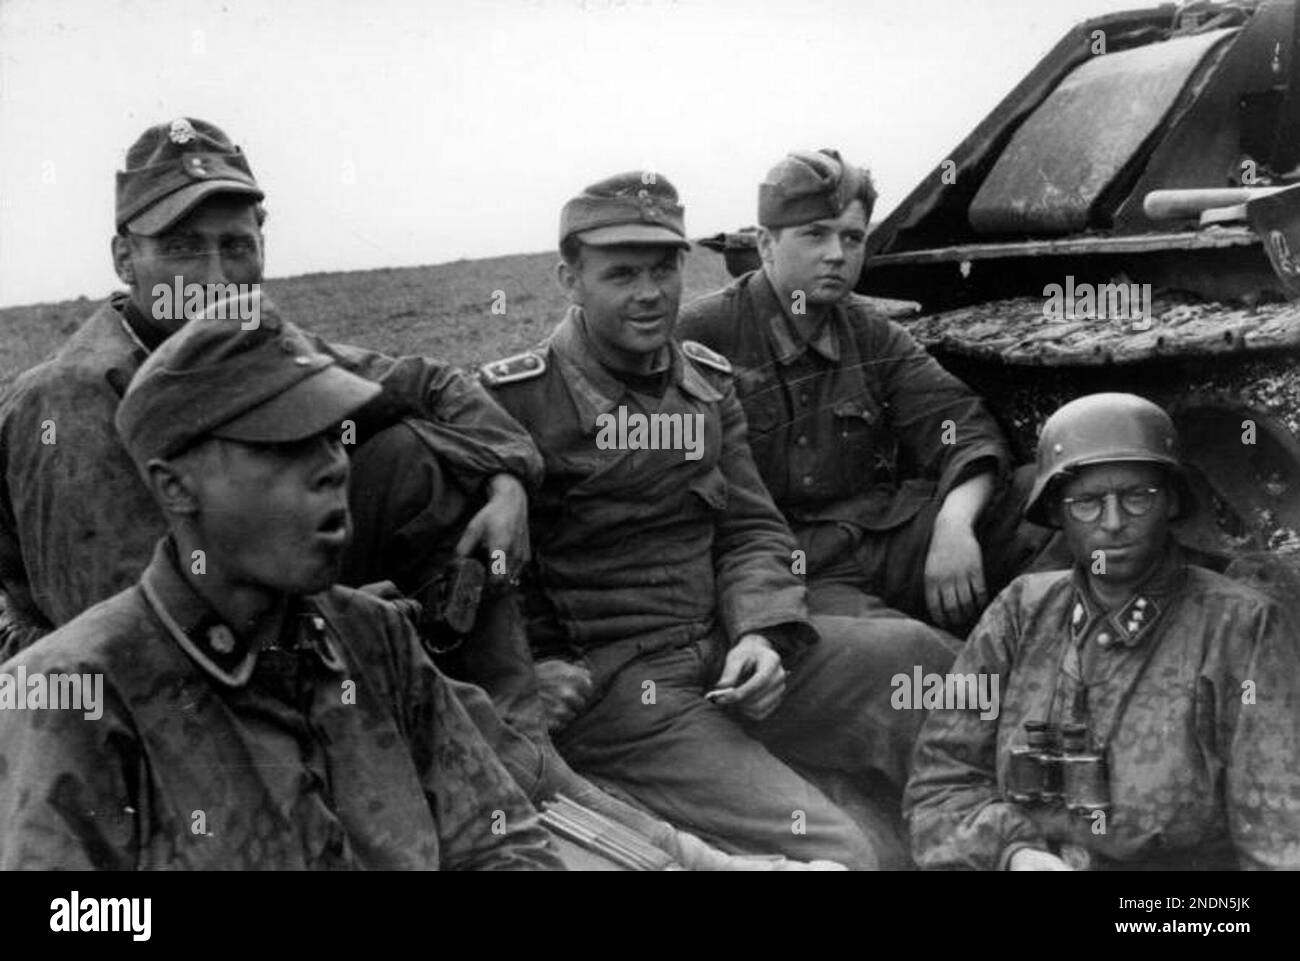 Soldats de la division Panzer SS de 3rd 'Totenkopf' au repos à côté d'un char soviétique détruit T-34 en Roumanie en 1944. Photo Bundesarchiv Bild 101I-024-3535-30, Ostfront, Waffen-SS-Angehörige BEI Rast.jpg Banque D'Images